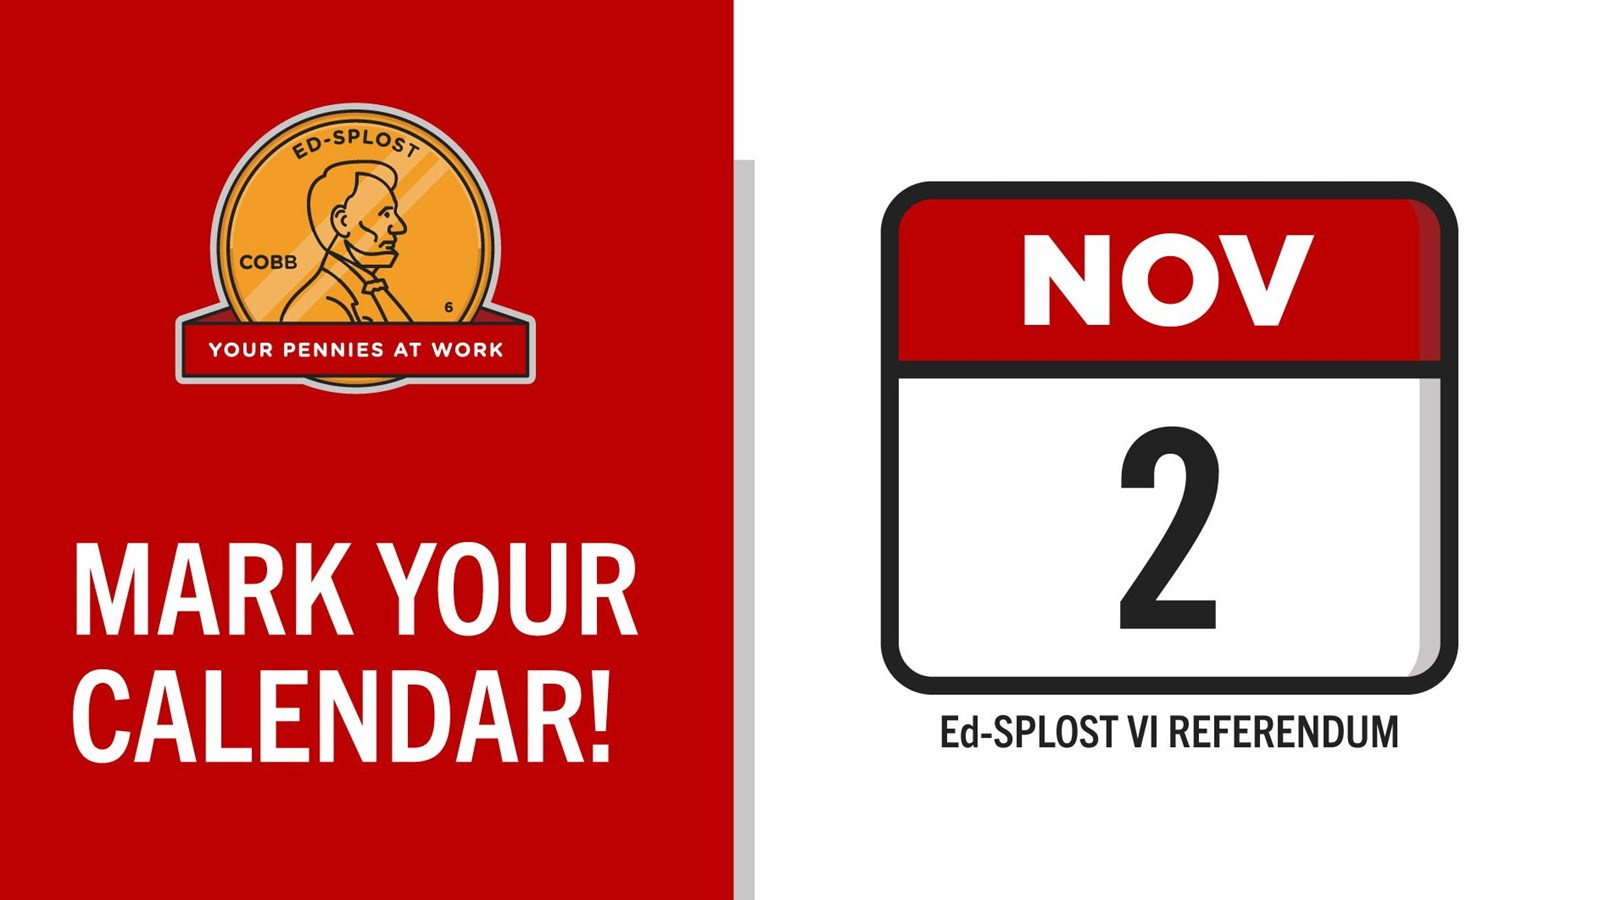 Mark Your Calendar November 2 Edsplost Referendum